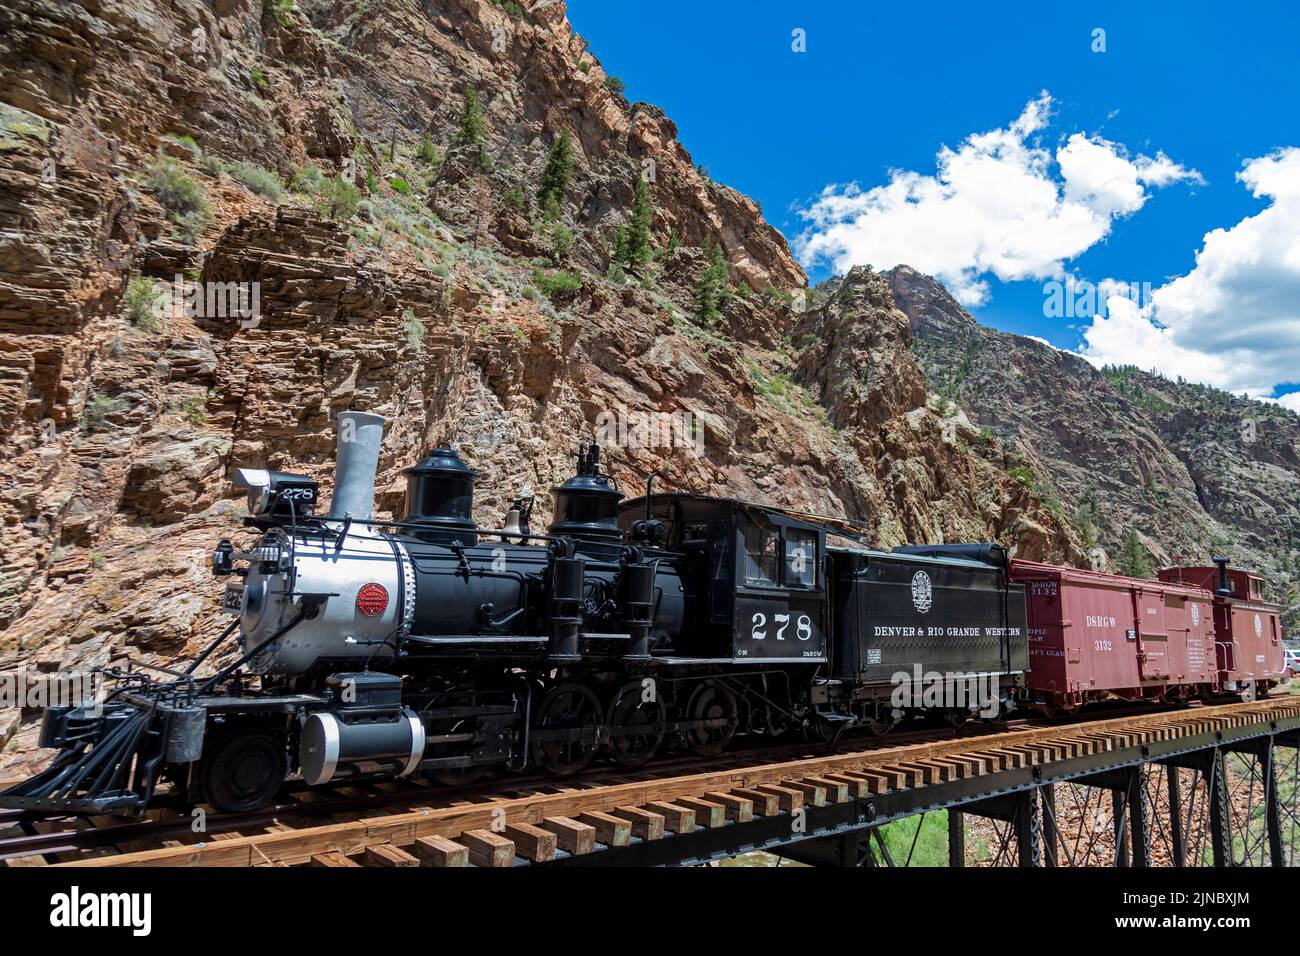 Cimmaron, Colorado - El ferrocarril de Denver y Río Grande se exhibe en el último caballete restante de la ruta histórica del ferrocarril a lo largo del Cany Negro Foto de stock